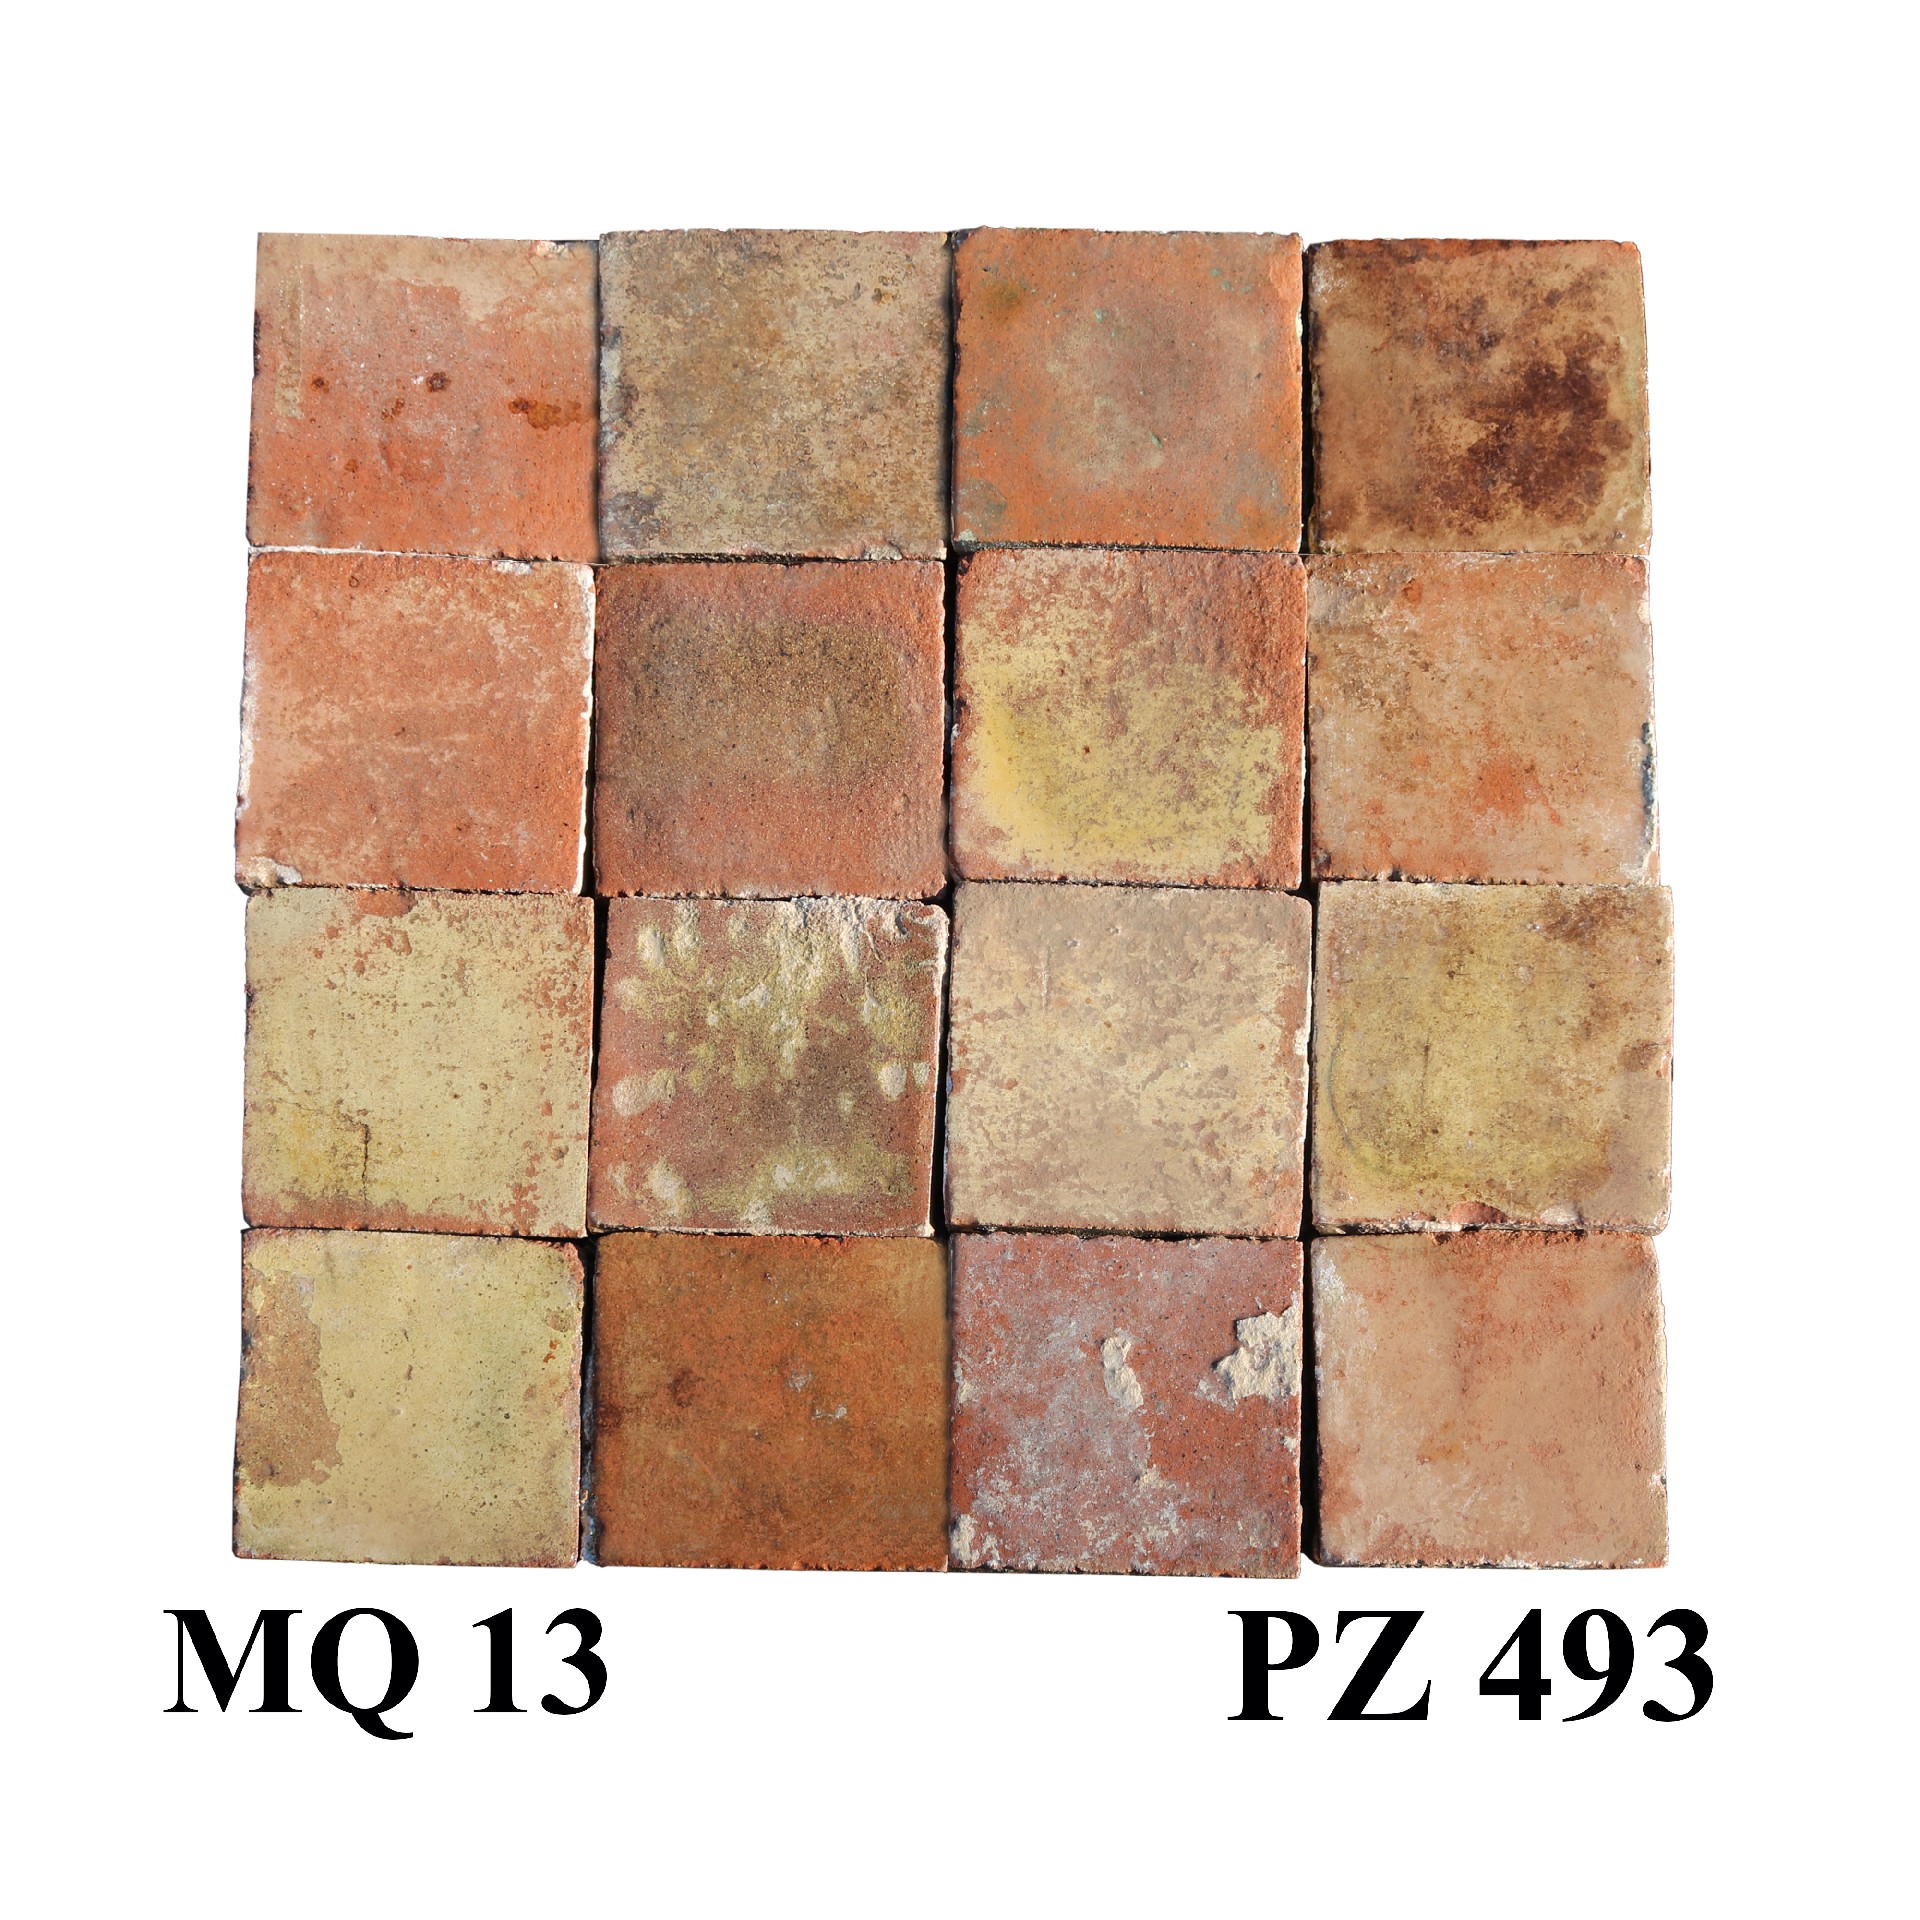 Antica pavimentazione in cotto. cm 16/16.5x16/16.5 - Pavimenti in Cotto - Pavimentazioni Antiche - Prodotti - Antichità Fiorillo